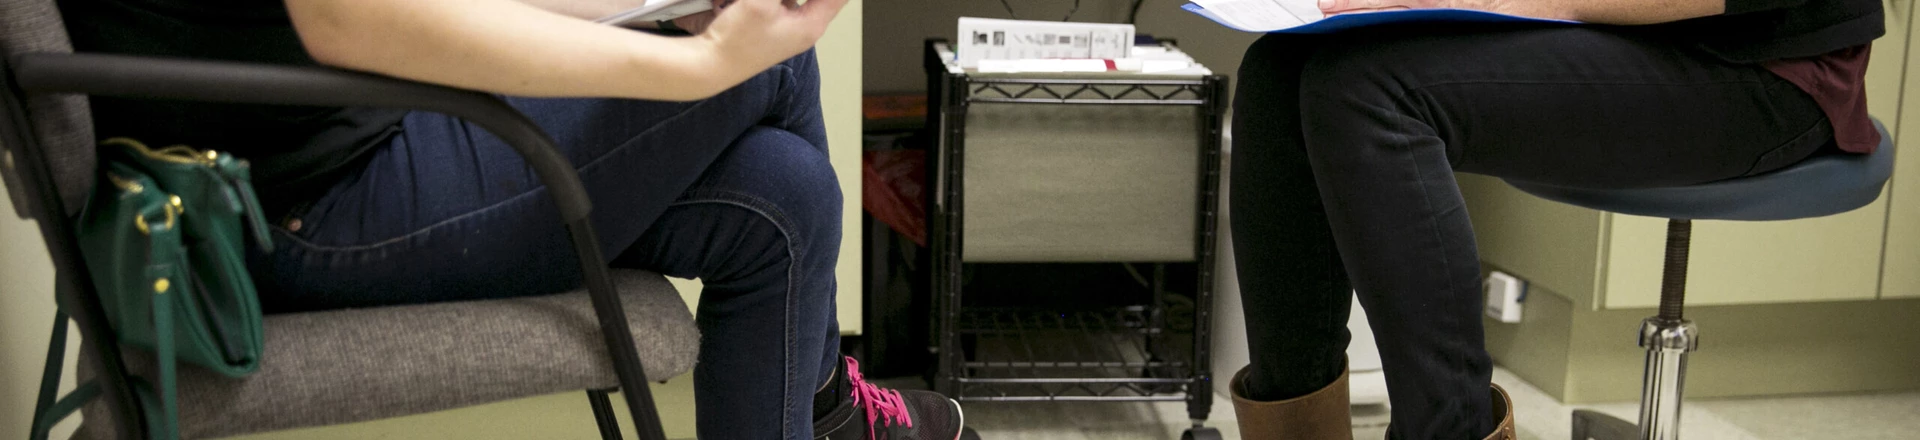 Mulher grávida é atendida em clínica no Texas que oferece aborto legal. Foto: Ilana Panich-Linsman/The Intercept